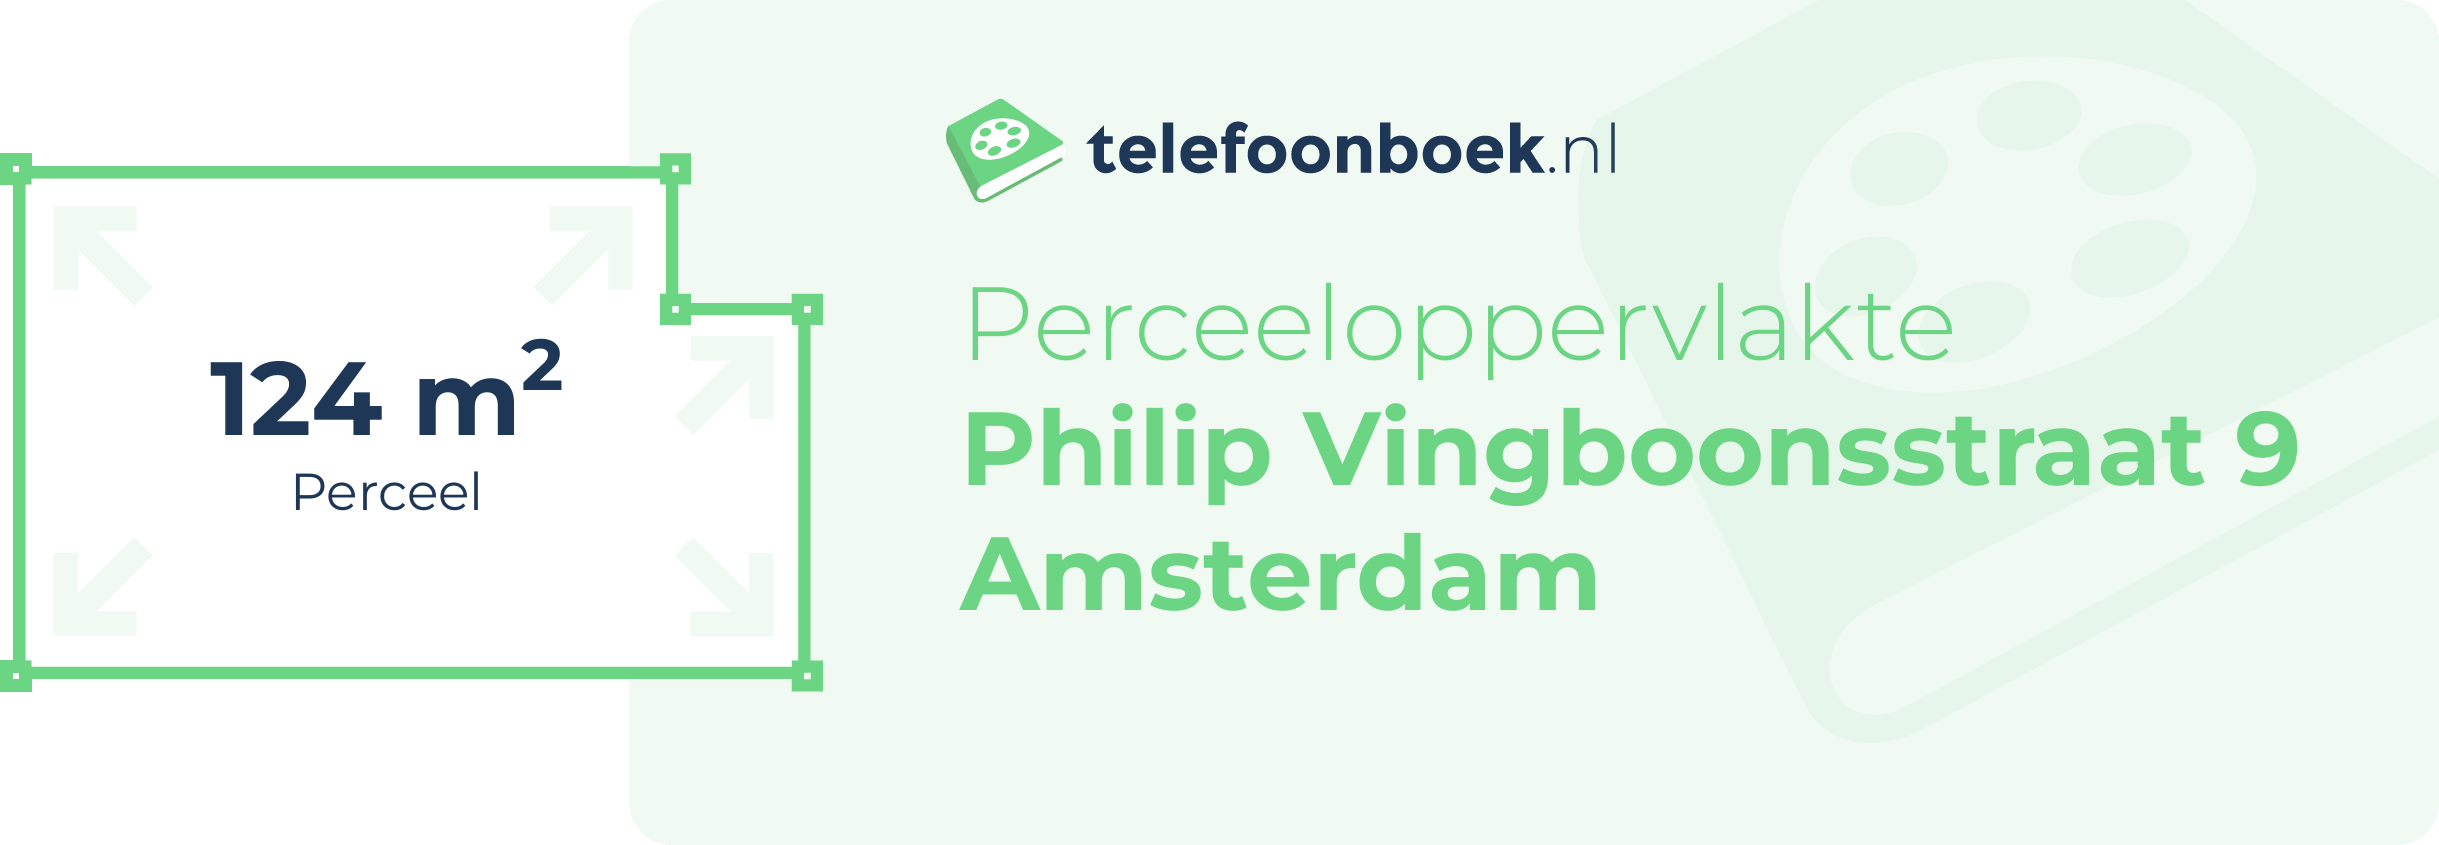 Perceeloppervlakte Philip Vingboonsstraat 9 Amsterdam